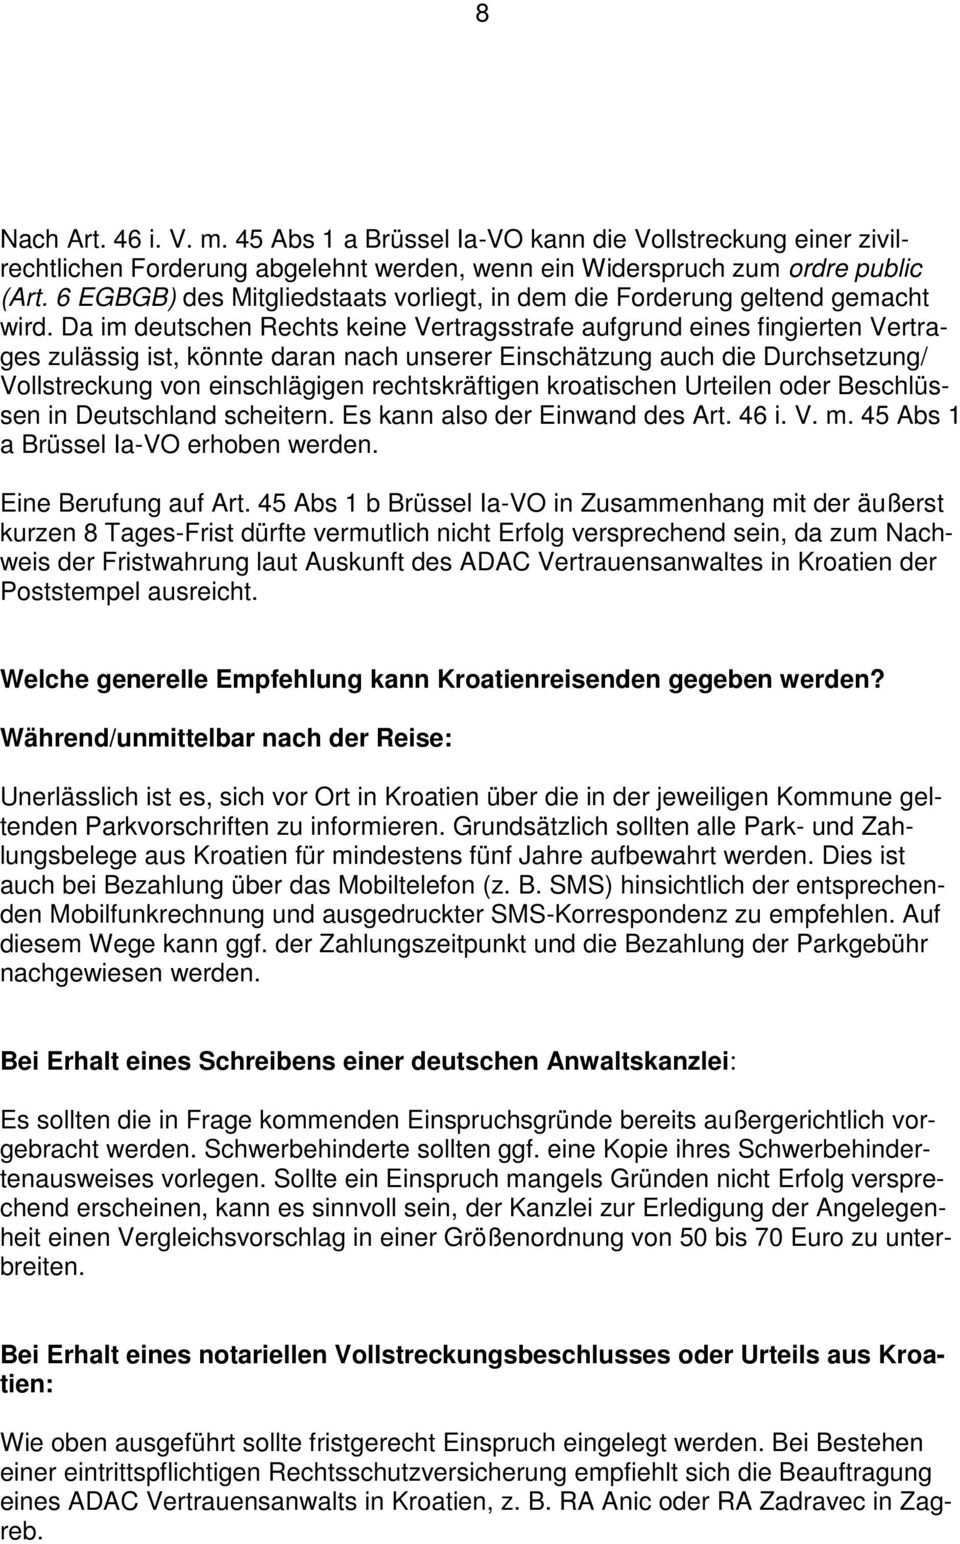 Mitteilungen Der Juristischen Zentrale Pdf Free Download